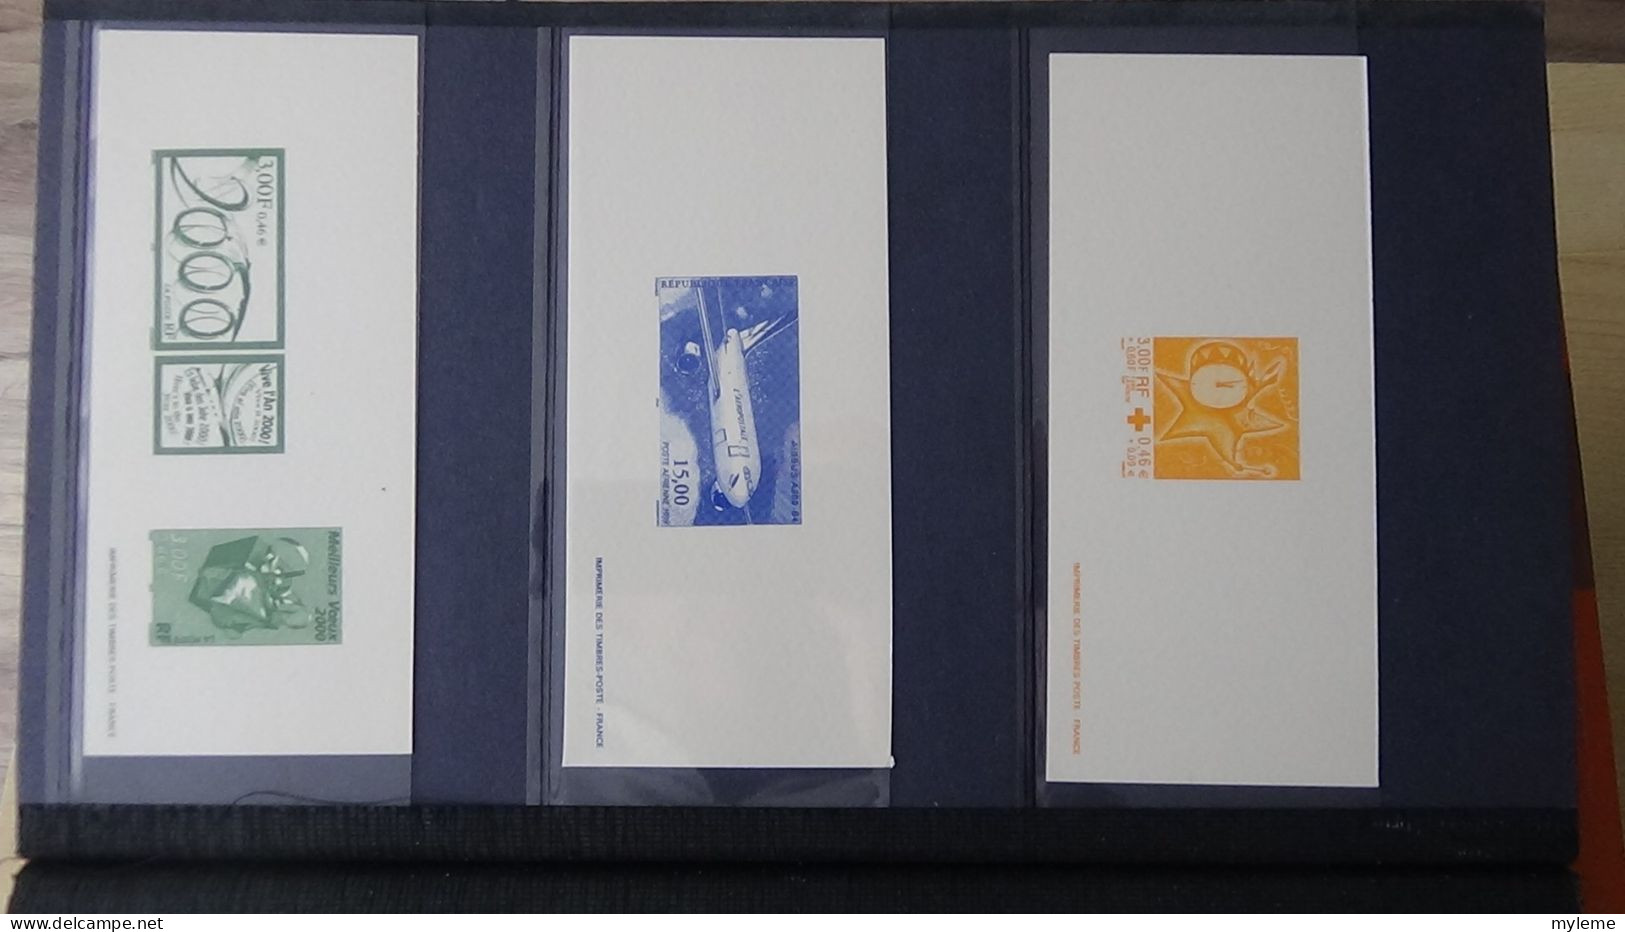 BF76 Gravures des timbres-poste de France sans son album d'origine   A saisir !!!